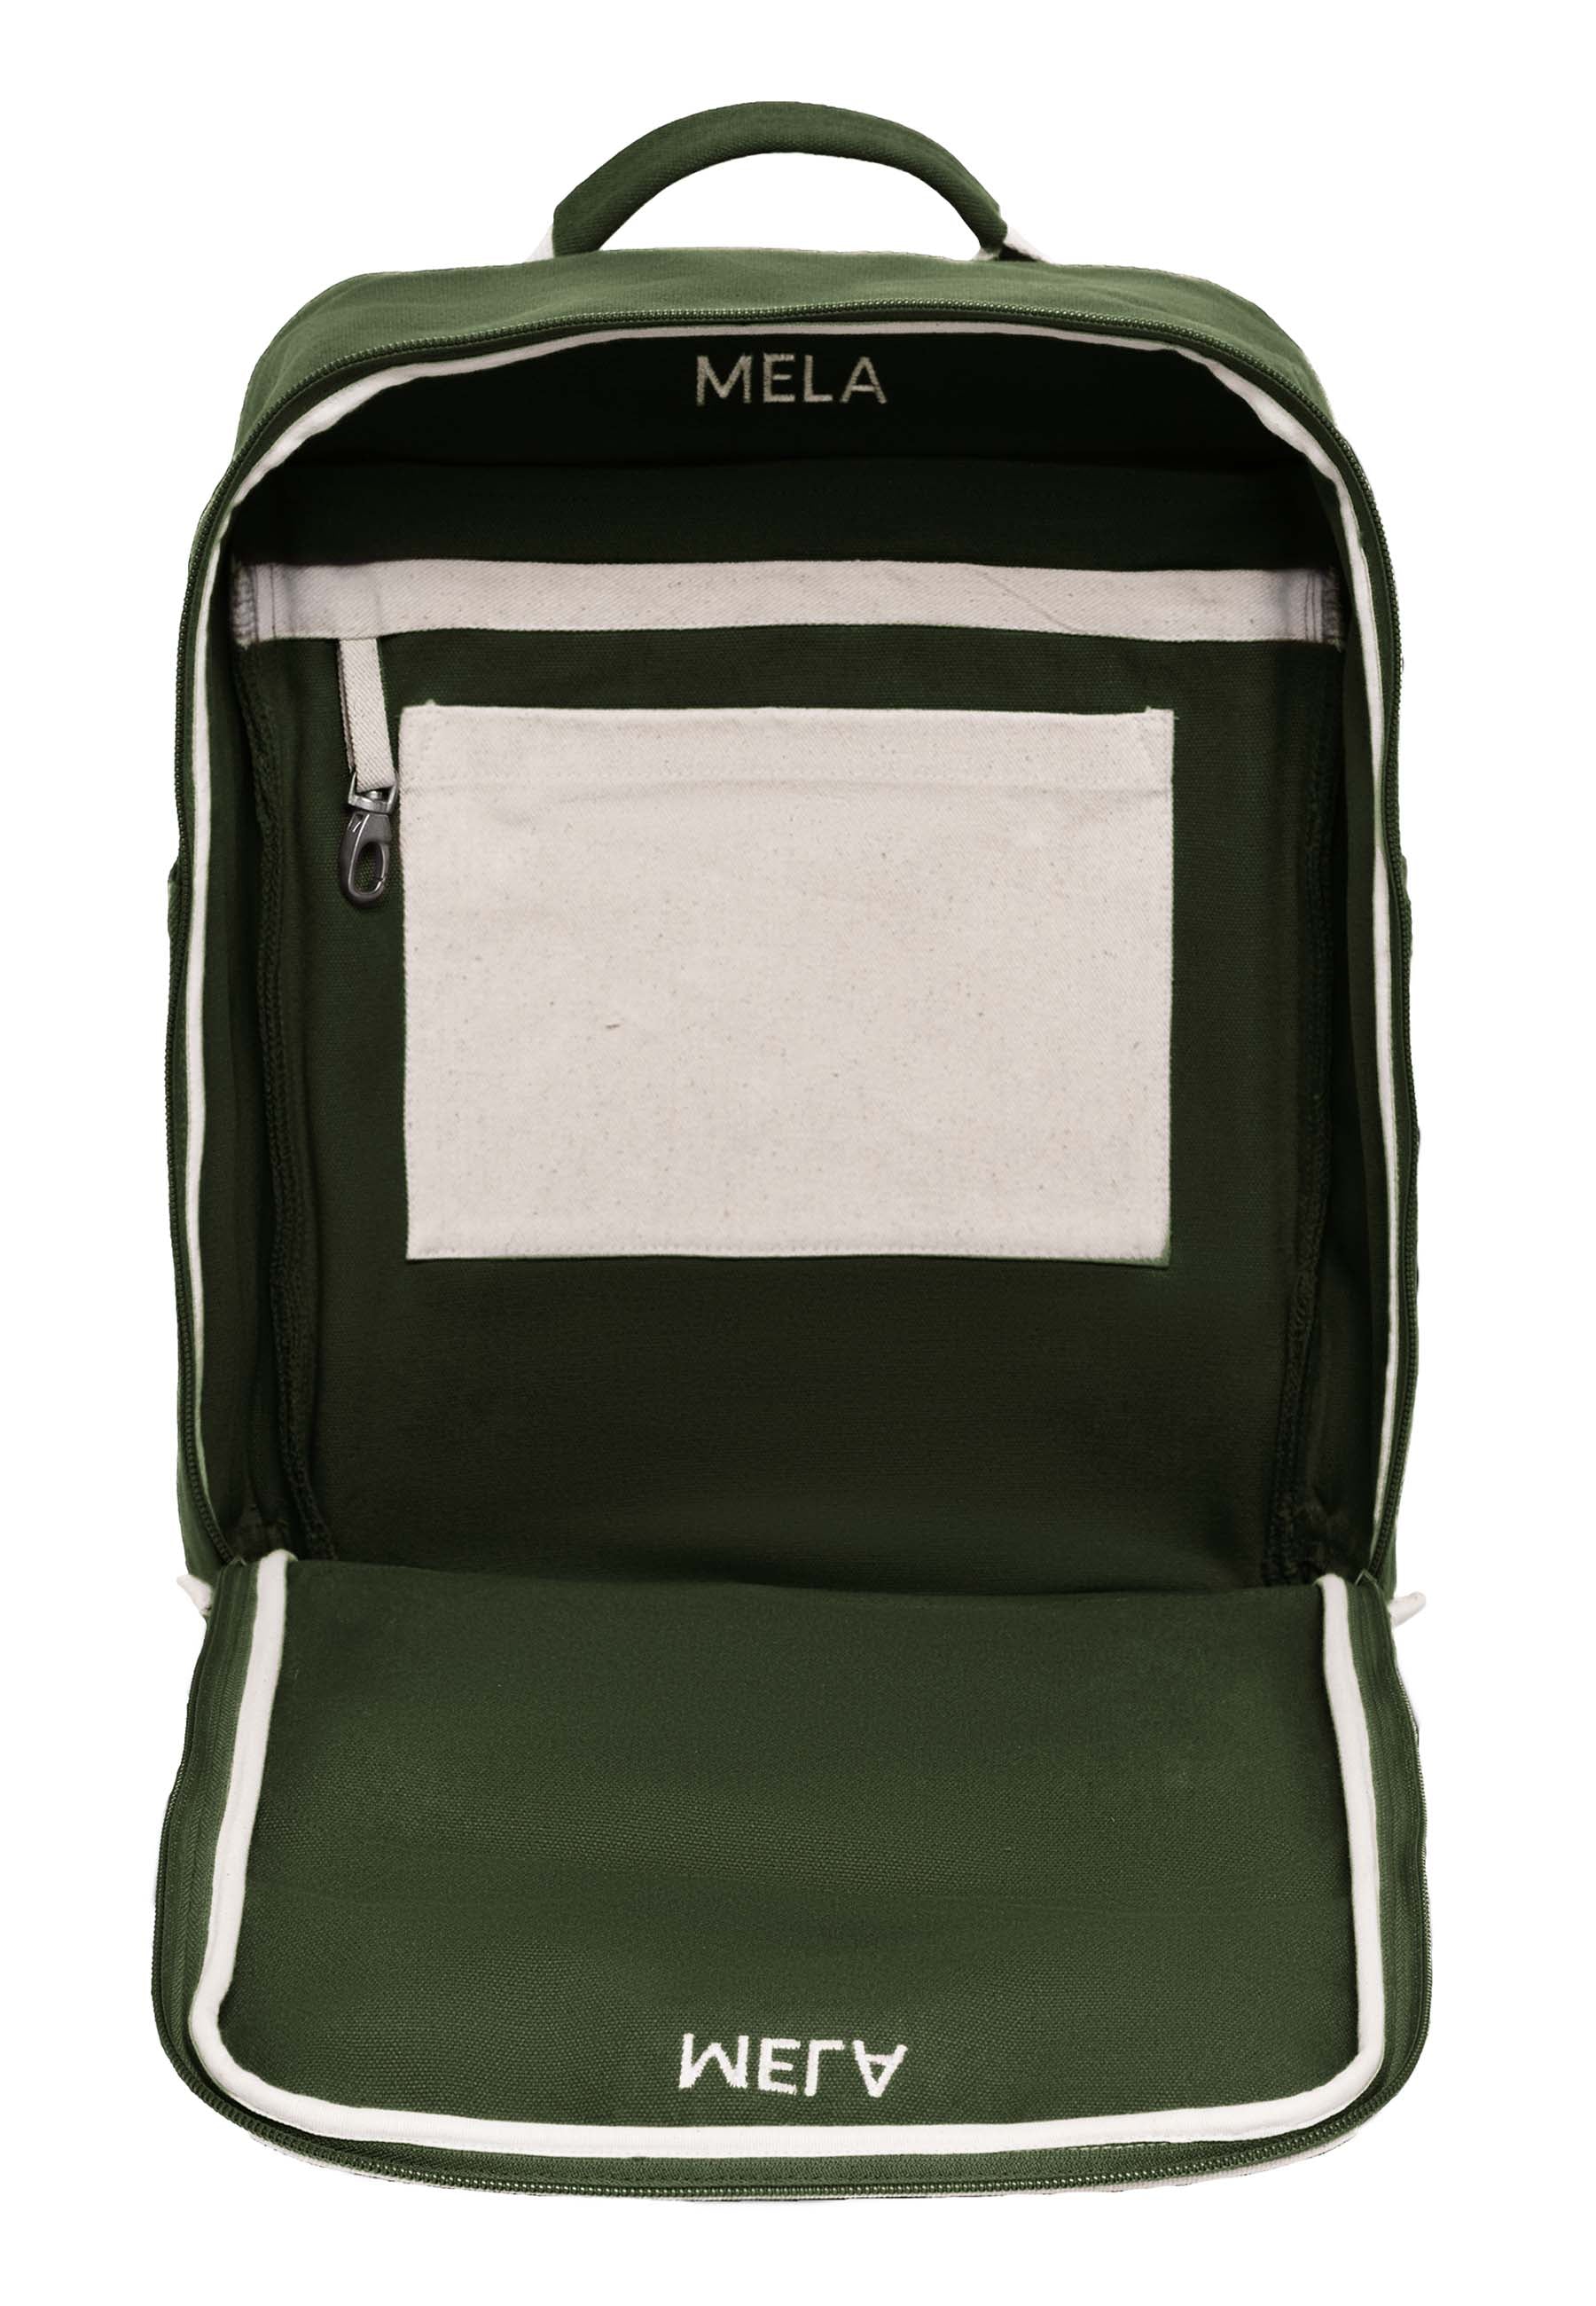 Melawear - MELA II hátizsák - Olíva zöld